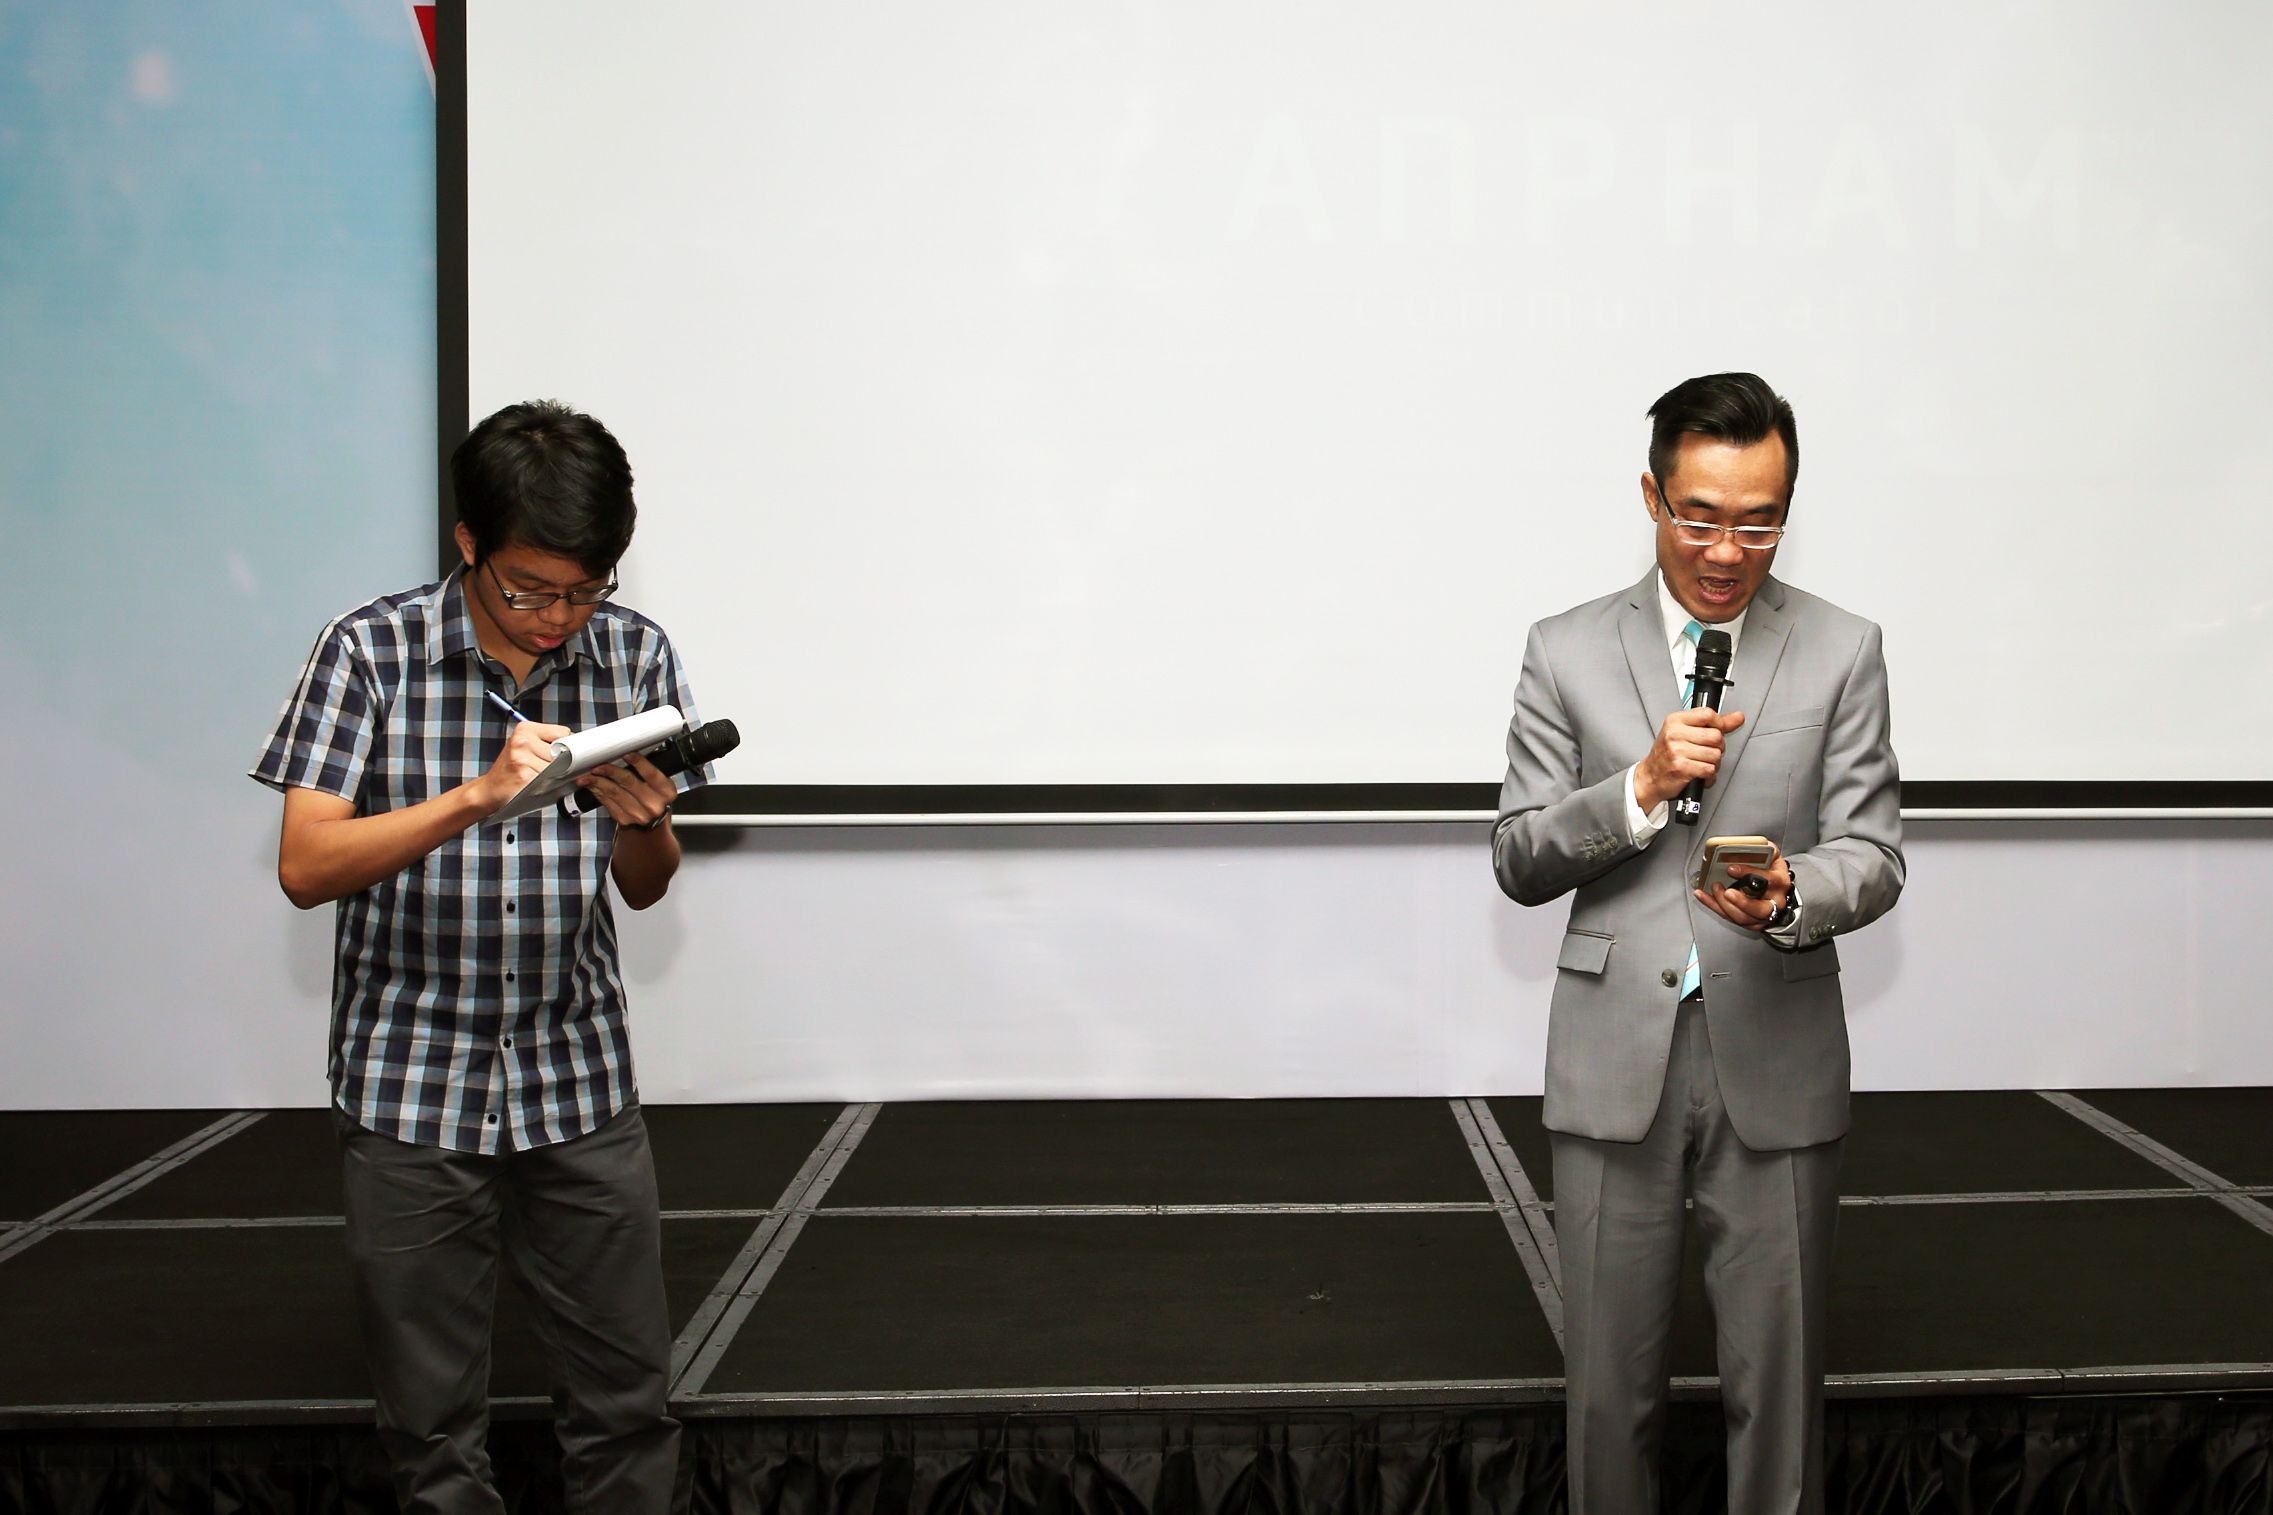 Ông Phạm Xuân Hoàng Ân (phải), thông dịch viên giàu kinh nghiệm, cùng một bạn sinh viên thể hiện công việc thông dịch